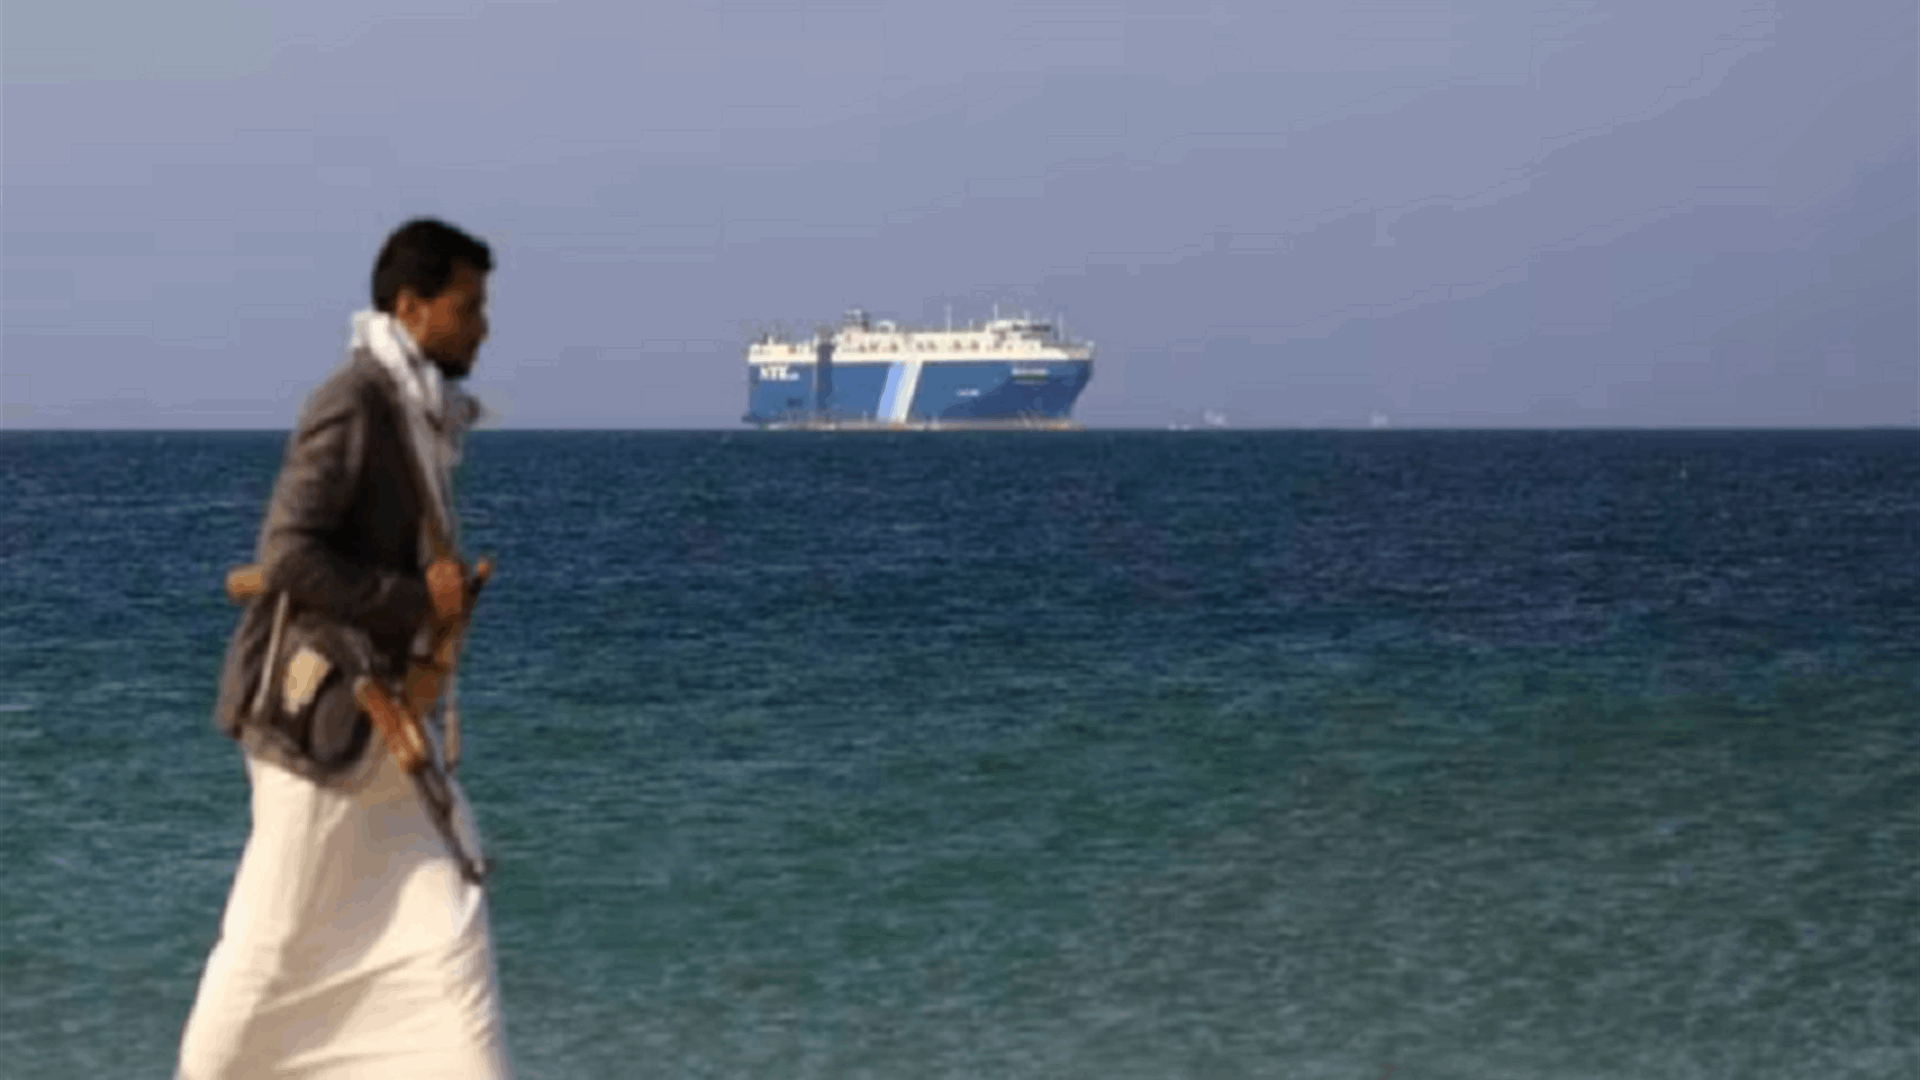  الحوثيون نفذوا عمليتين عسكريتين في البحر الأحمر استهدفتا سفينتين